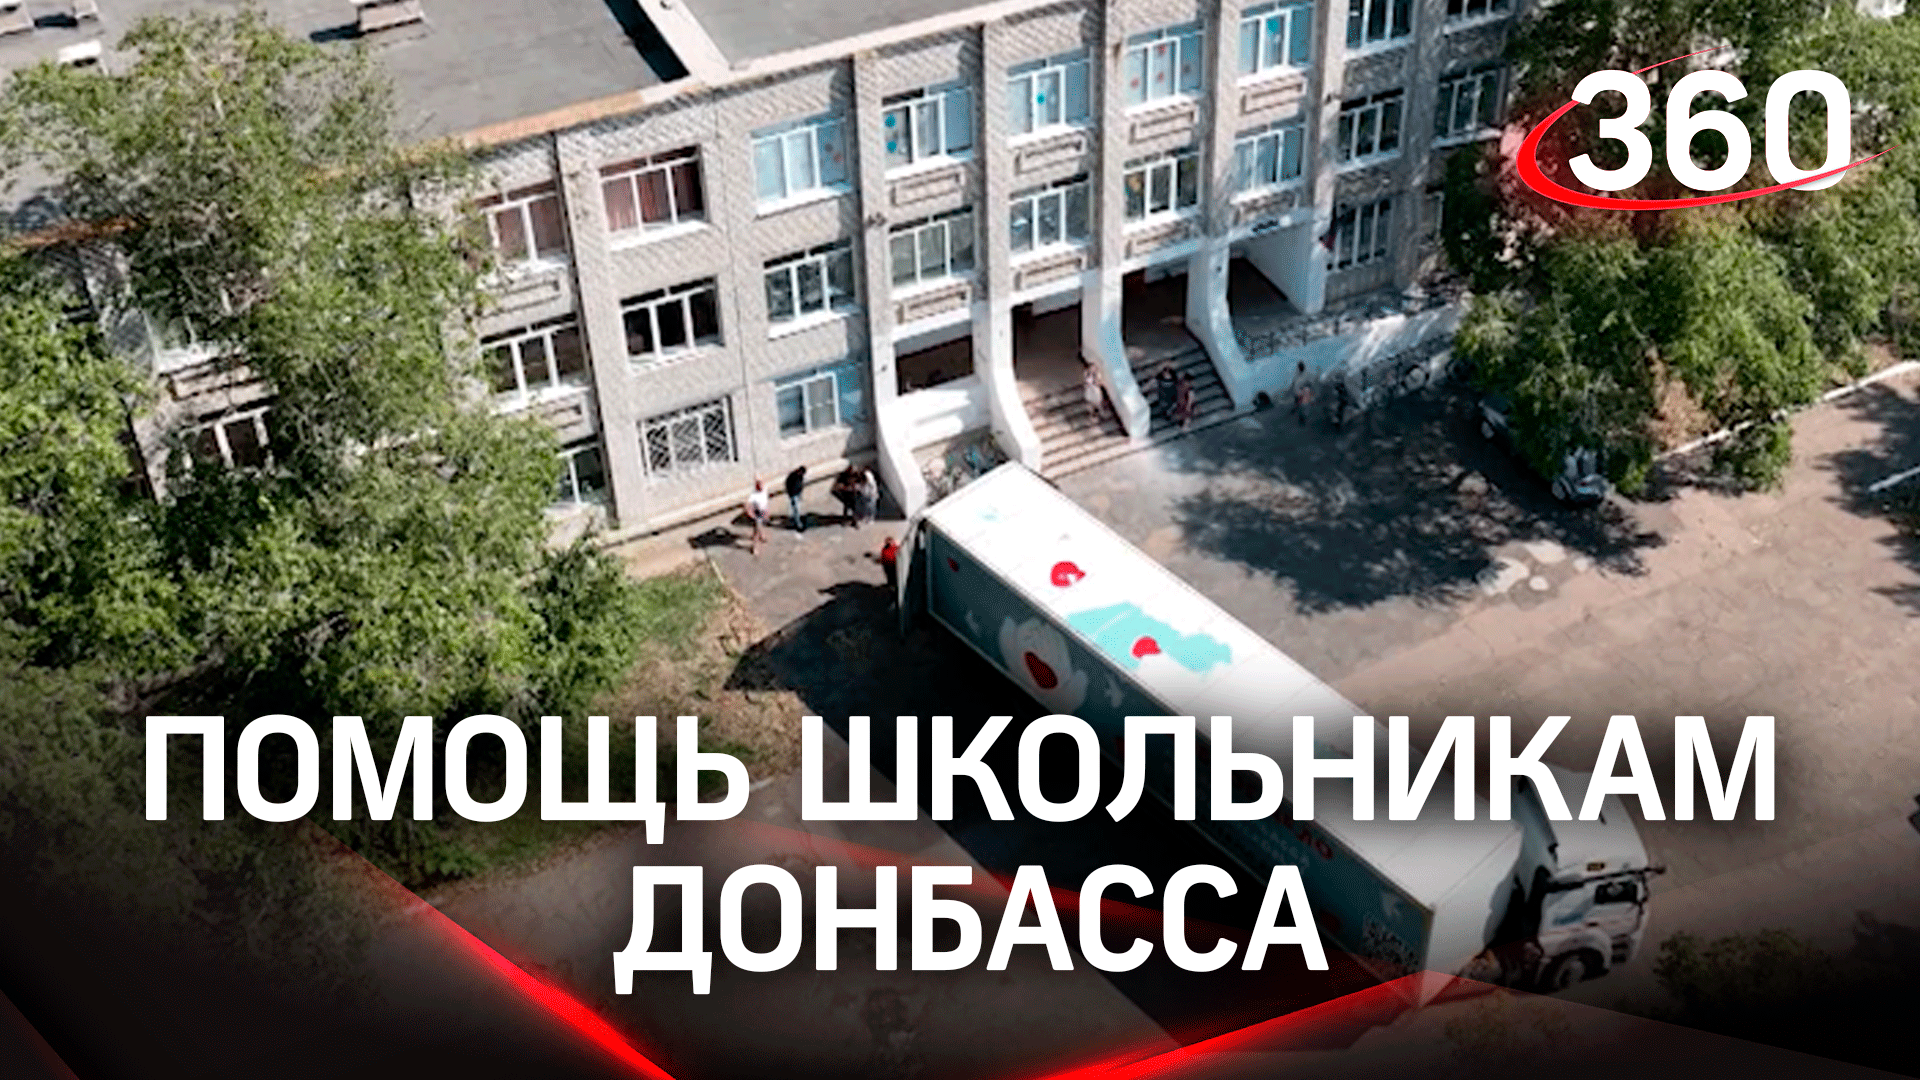 Волонтёры из Подмосковья доставили школьникам Донбасса гуманитарную помощь